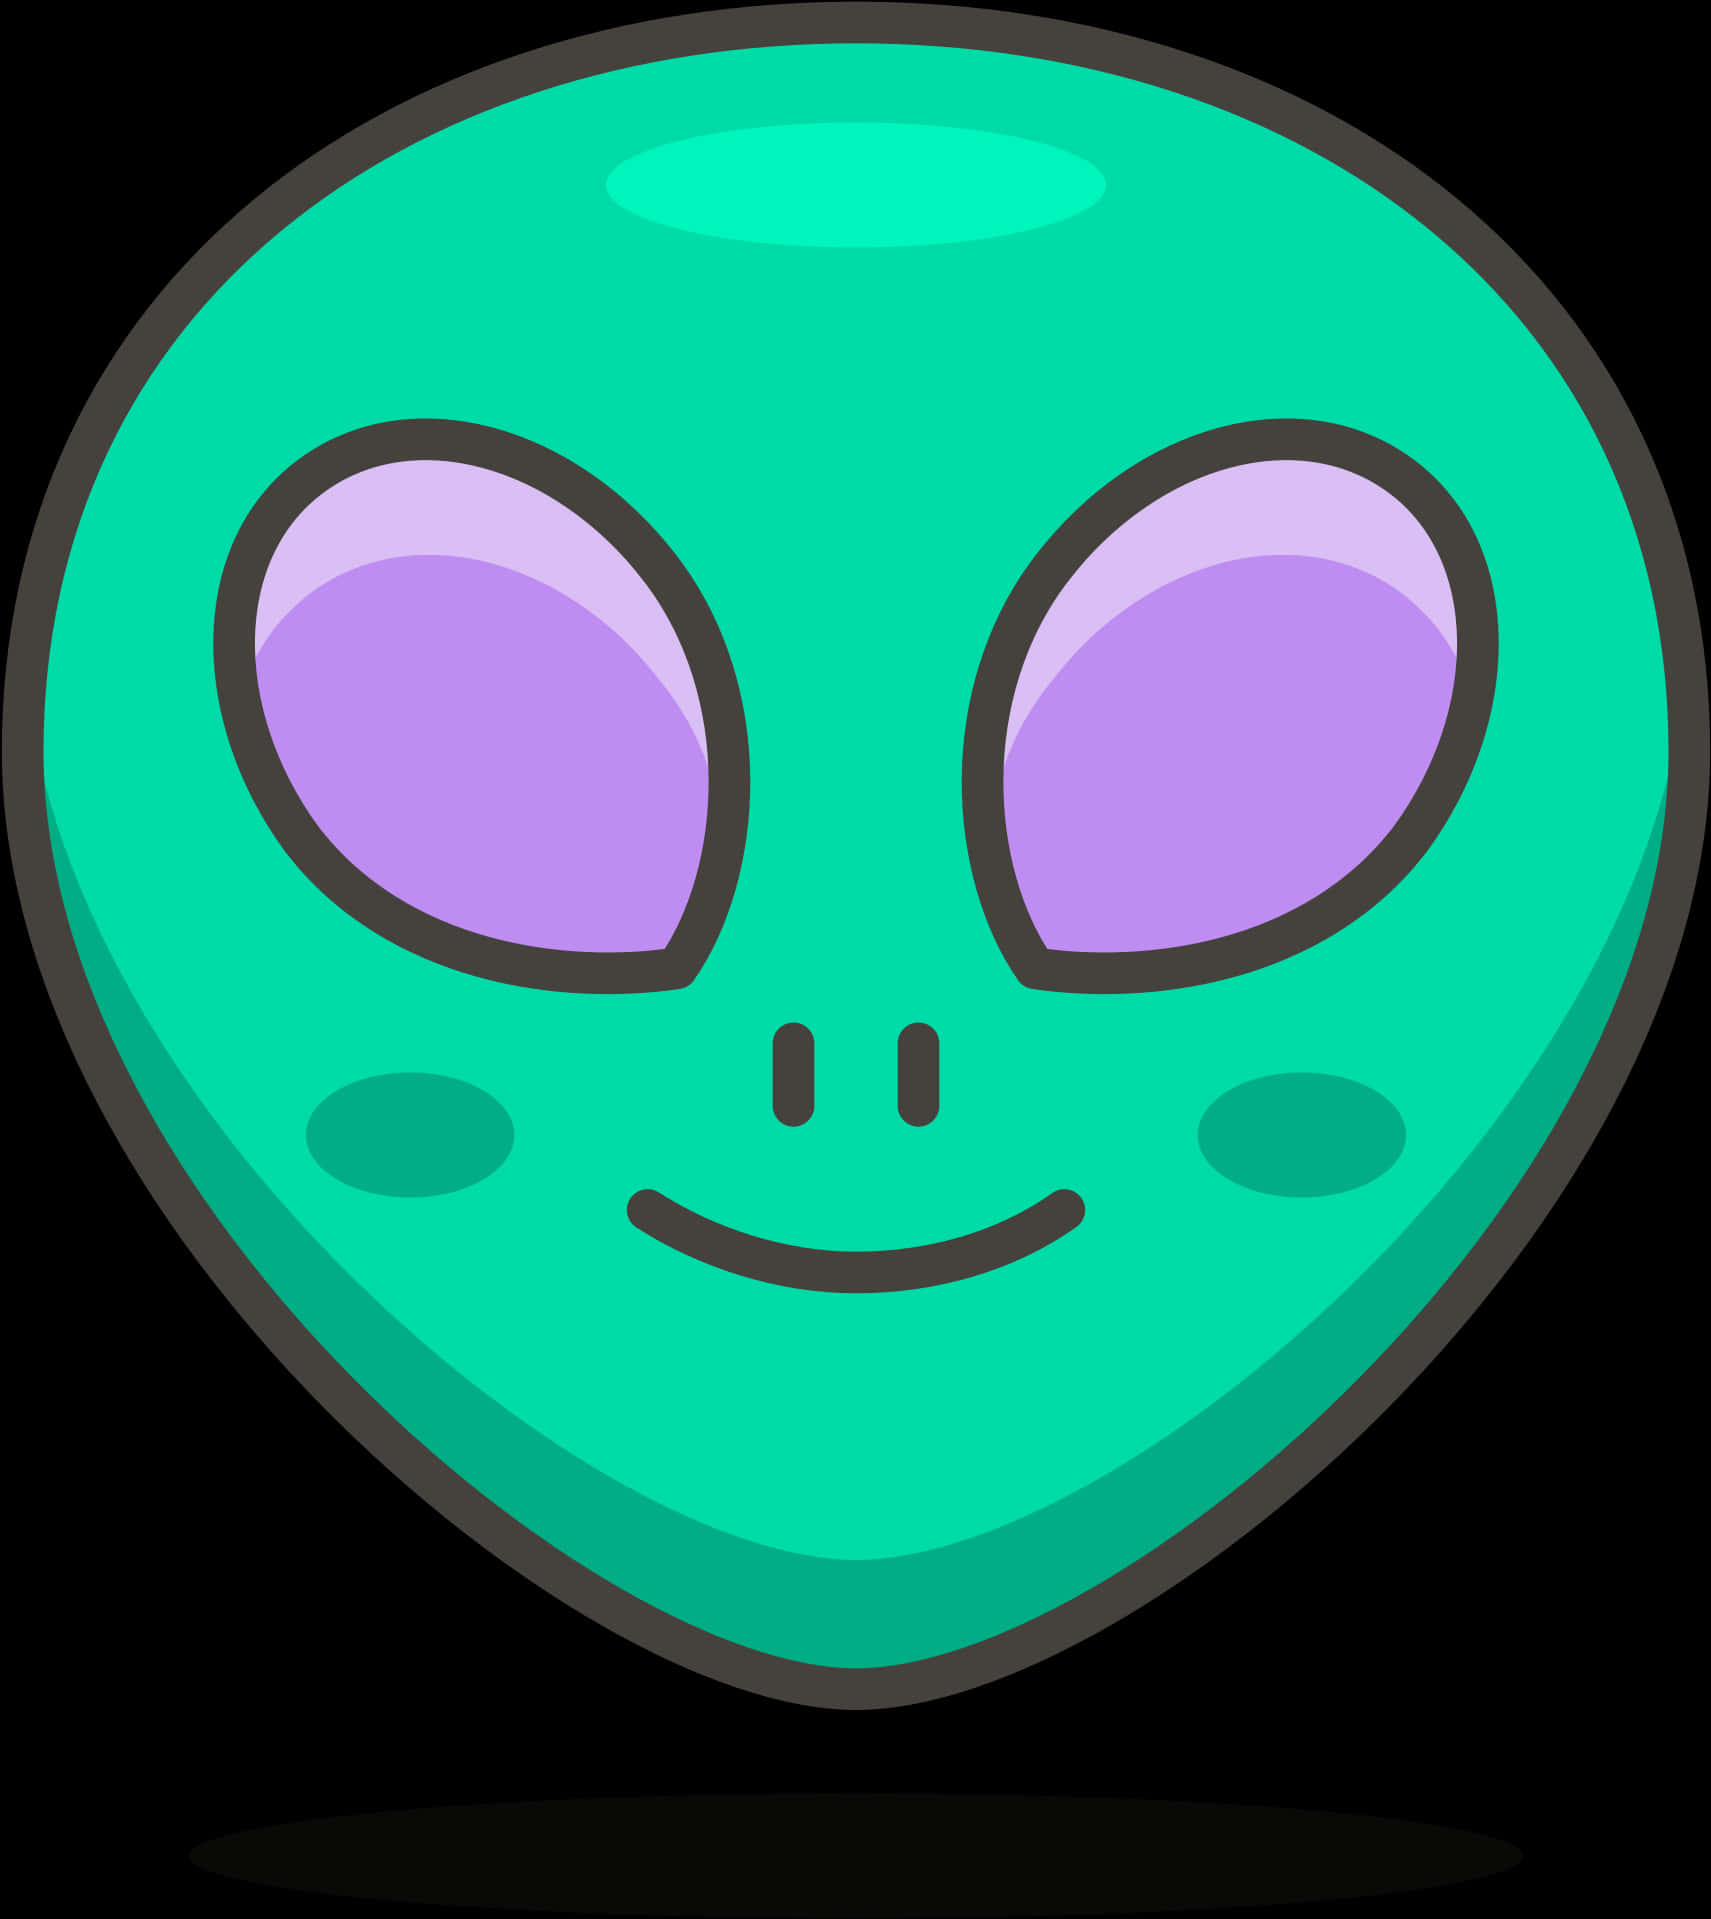 Friendly Cartoon Alien Head